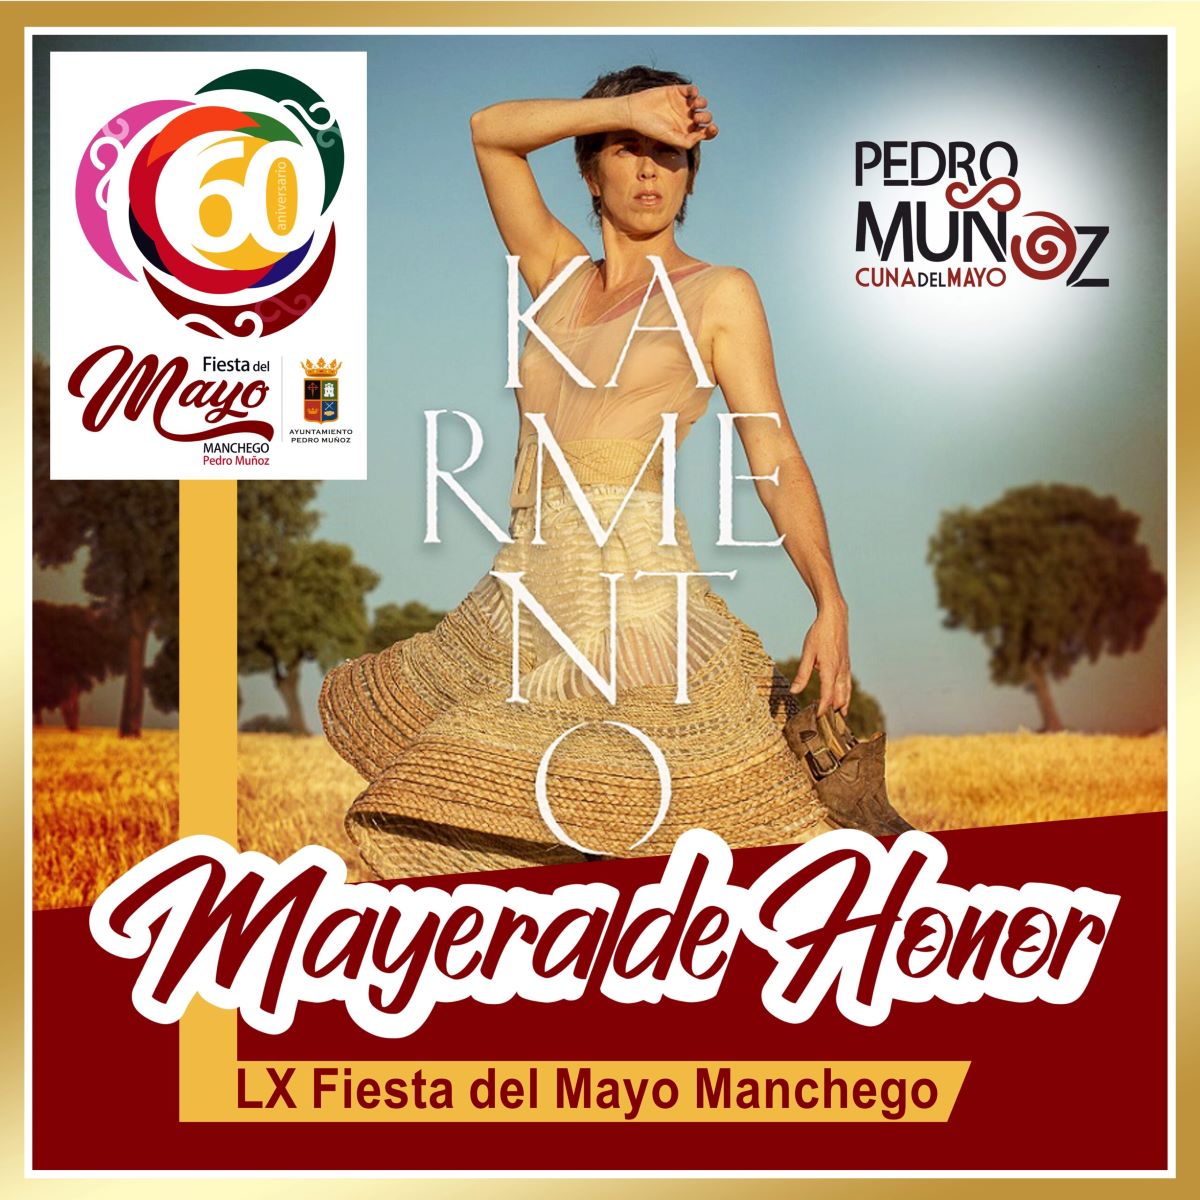 La albaceteña Karmento será Mayera de Honor en la Fiesta del Mayo Manchego de Pedro Muñoz